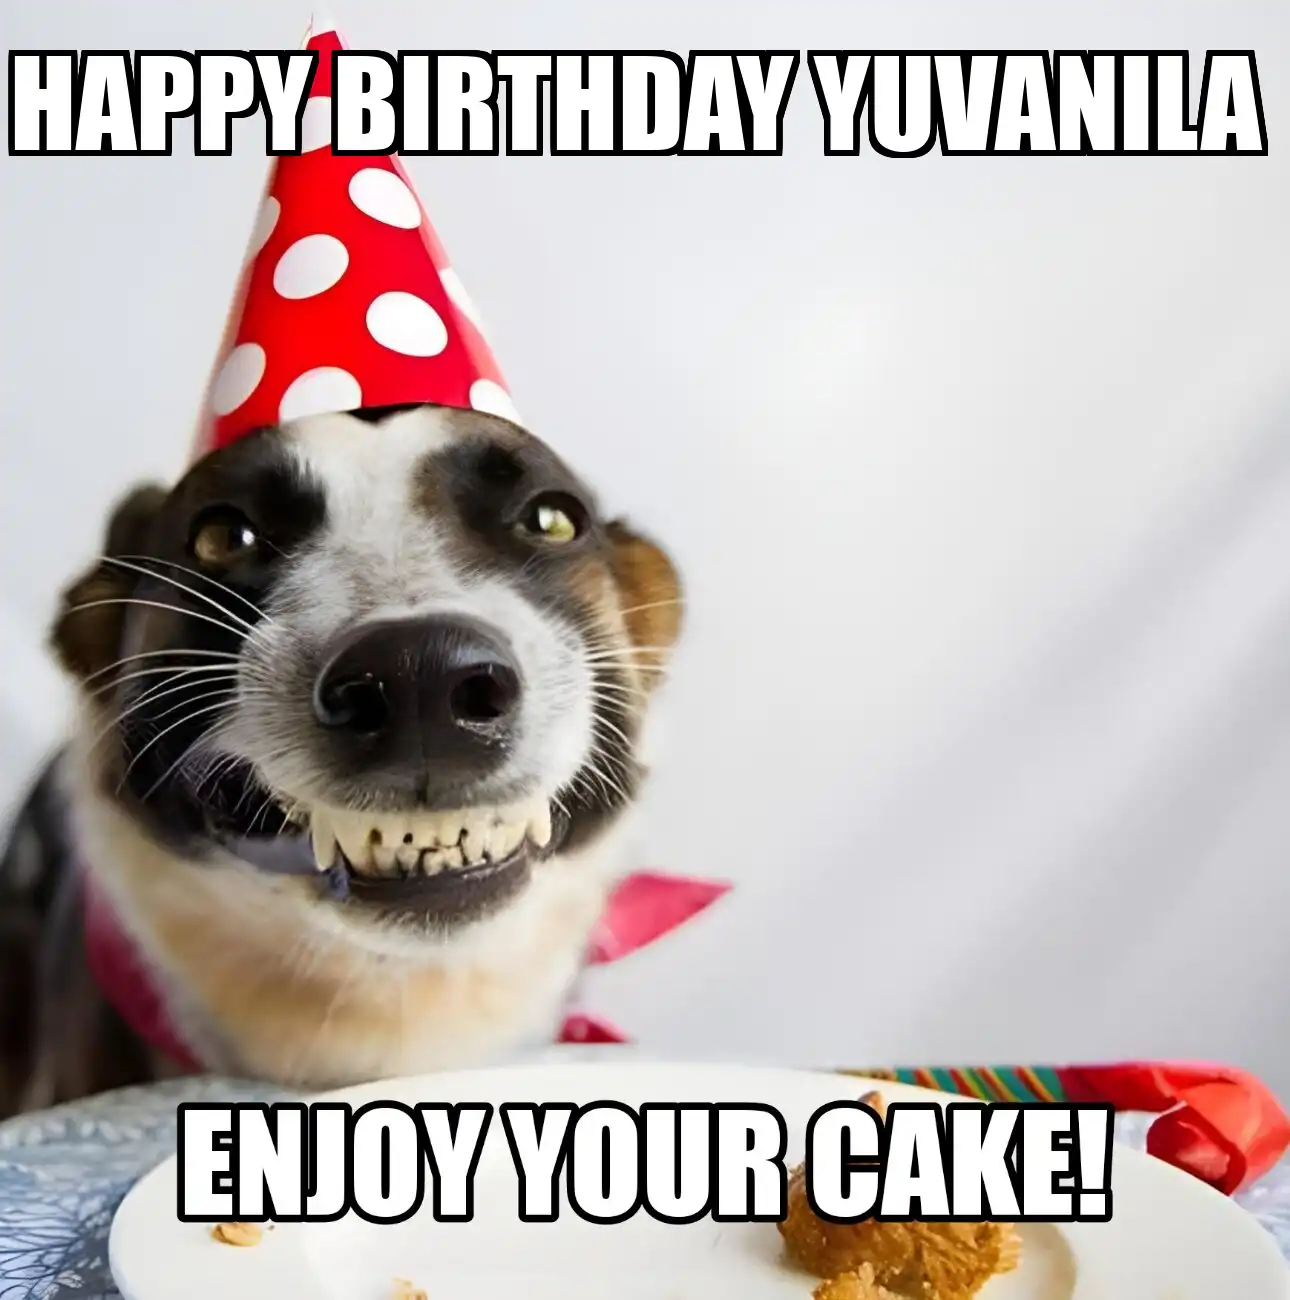 Happy Birthday Yuvanila Enjoy Your Cake Dog Meme